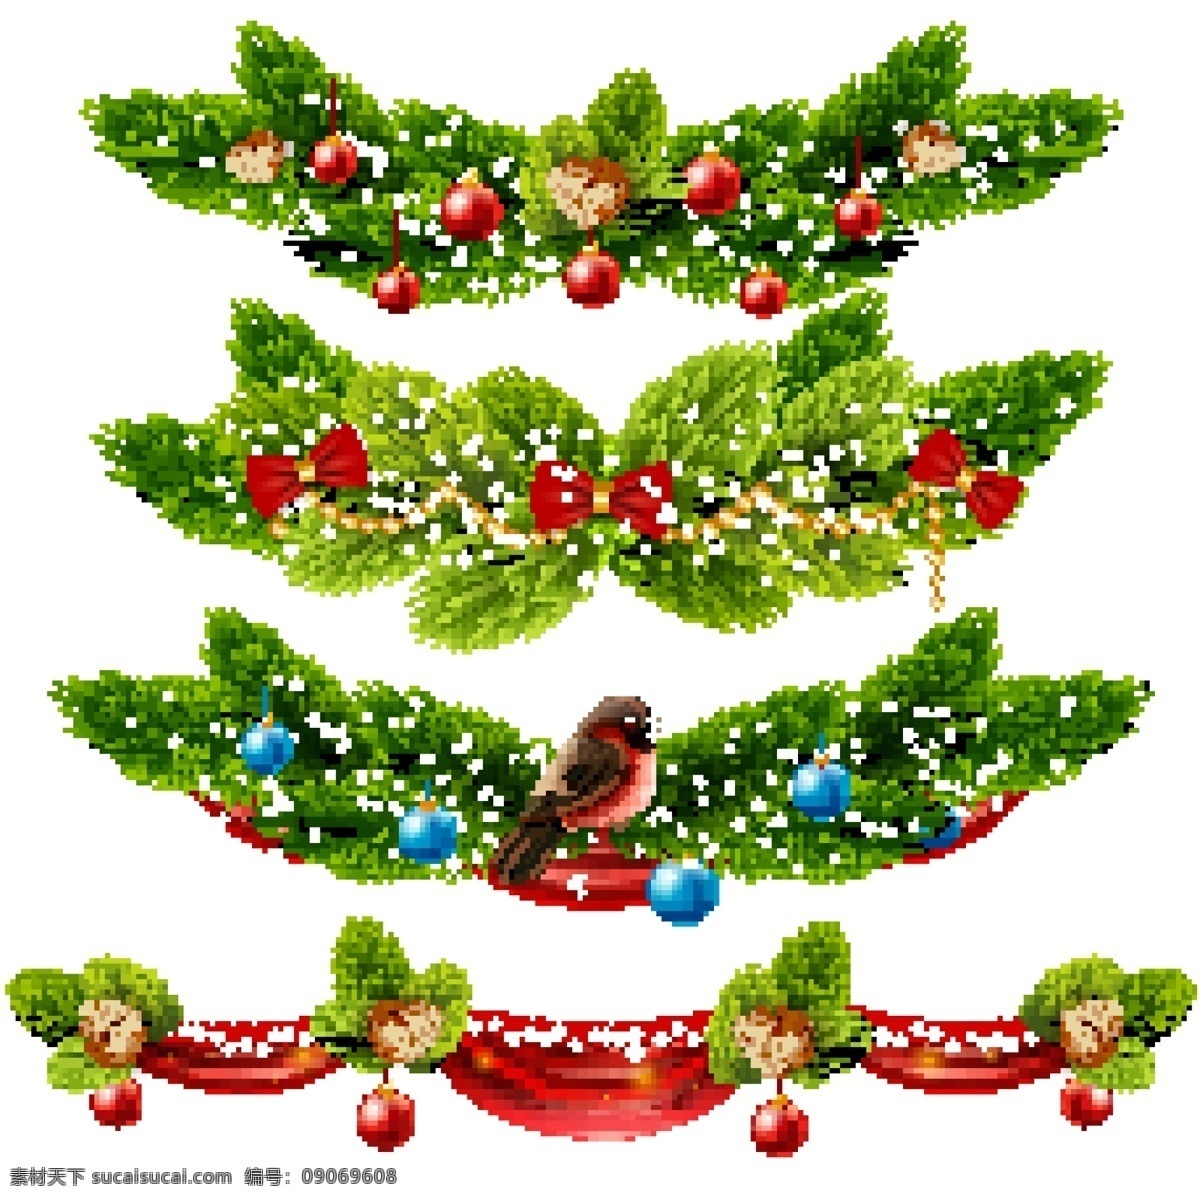 圣诞 装饰 绿色 边框 集 圣诞节 节日 卡通 过节 庆祝 狂欢 西方节日 假期 扁平 矢量